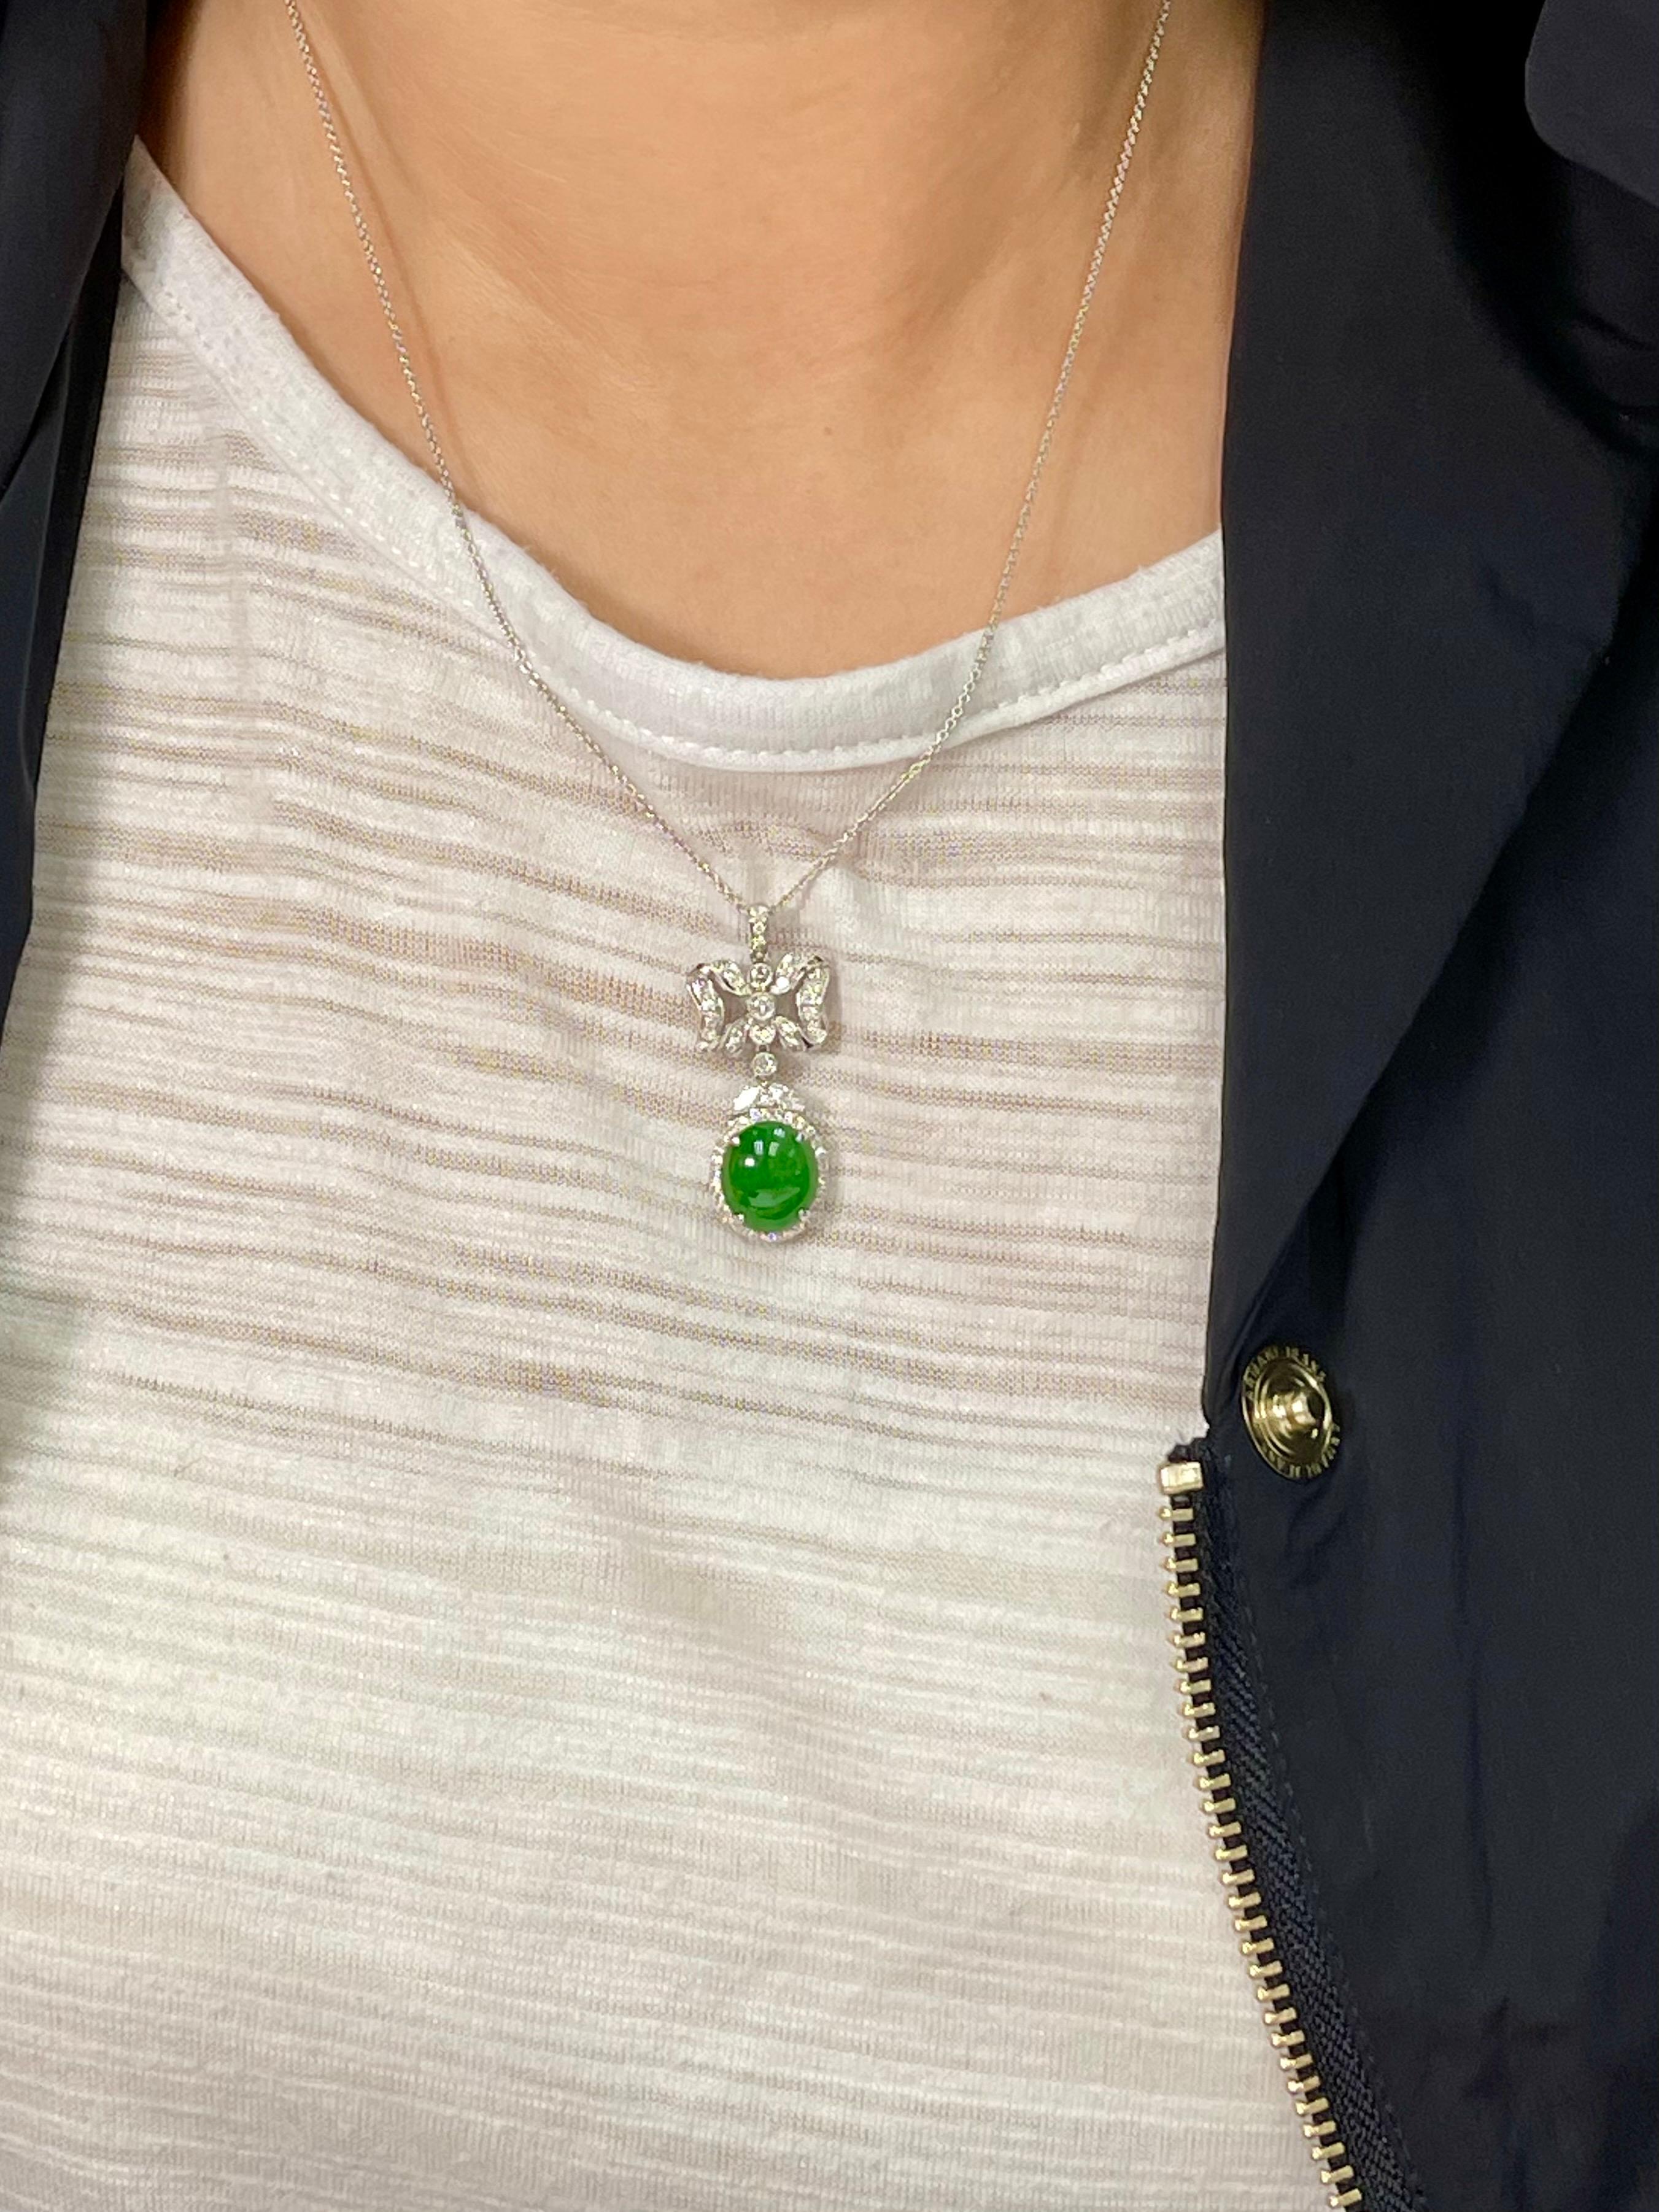 Voici un pendentif en jade naturel vert foncé et diamant. Le pendentif est serti d'or blanc 18k et de diamants. On estime à 0,75 ct le nombre de diamants sertis dans ce pendentif. Le jade naturel non traité / non amélioré est plein de vie. La